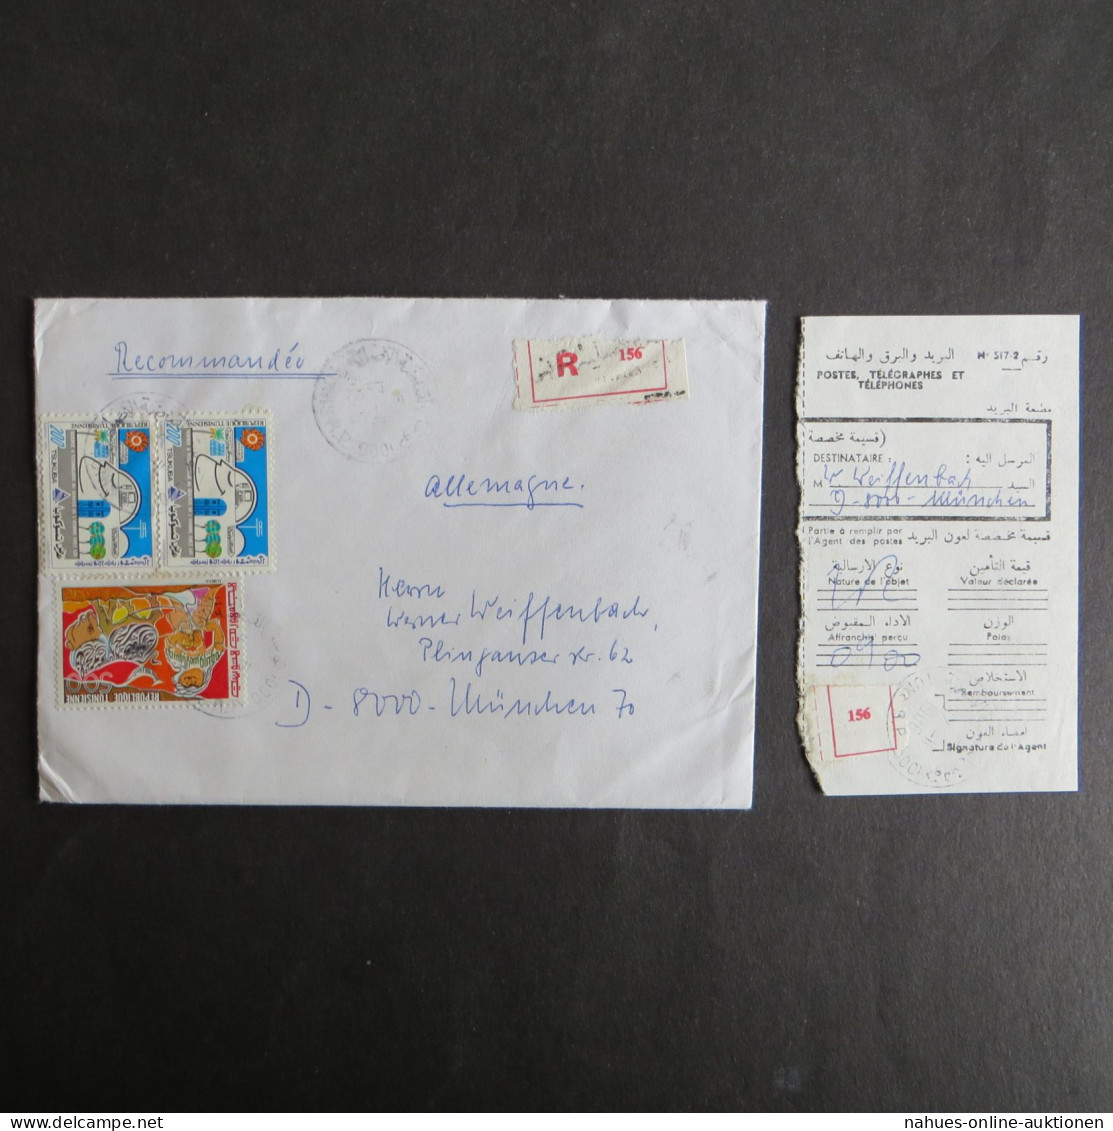 Sammlung Bund München Briefe Incoming Mail Einschreiben + Festpreis 160,00